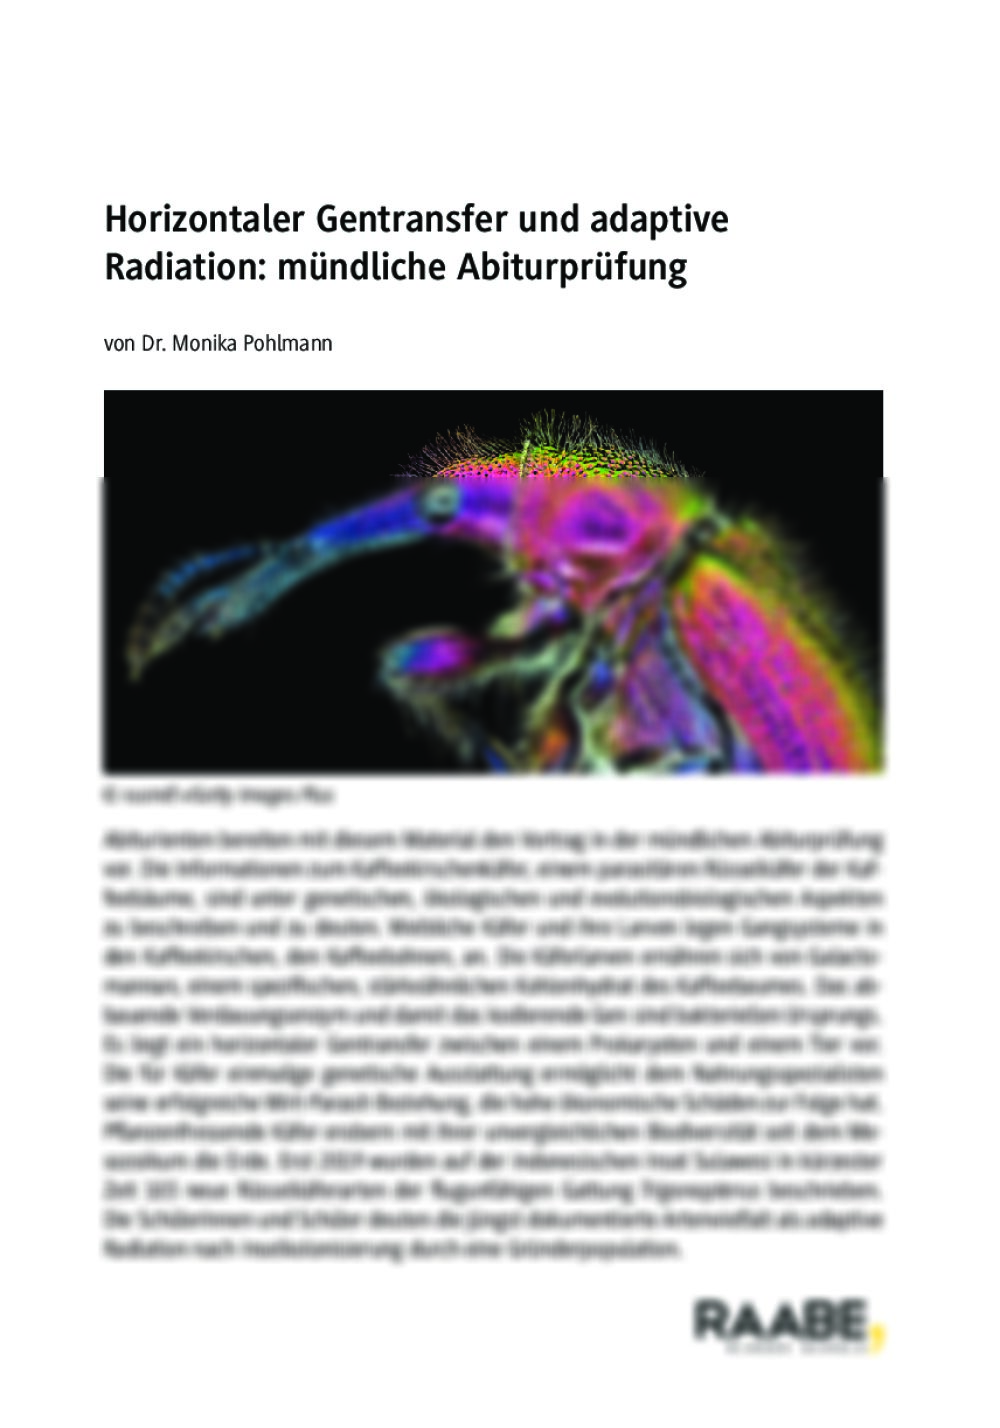 Mündliche Abiturprüfung: Horizontaler Gentransfer und adaptive Radiation - Seite 1